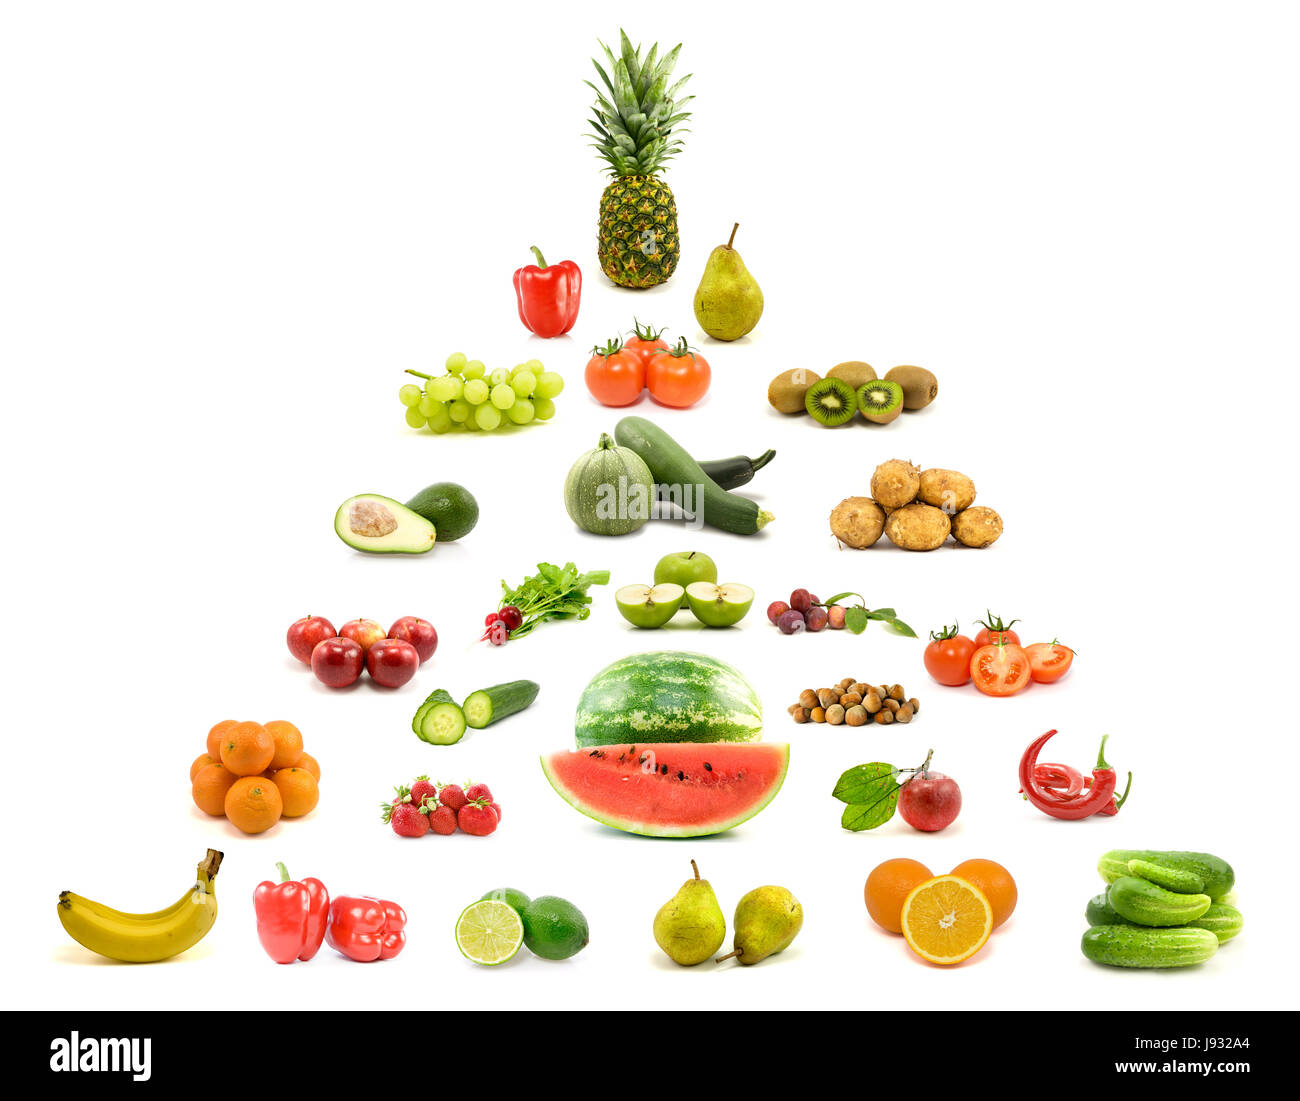 Cibo, aliment, salute, ortofrutticoli, dieta, nutrizione, mangiare, mangiare, mangia, Foto Stock